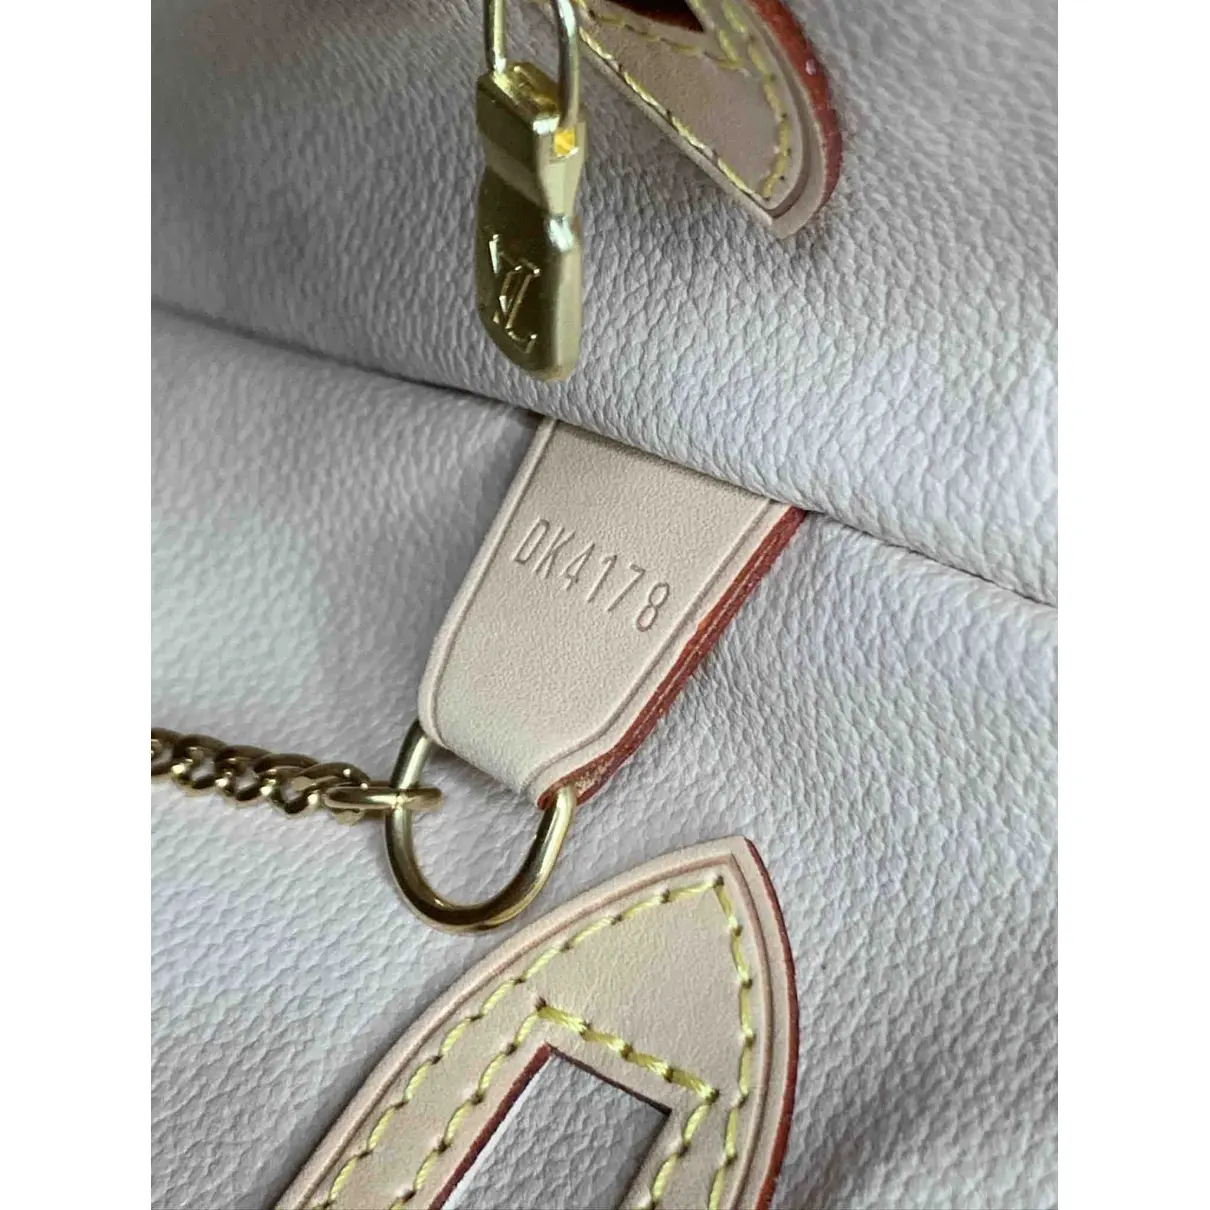 Buy Louis Vuitton Bucket  cloth handbag online